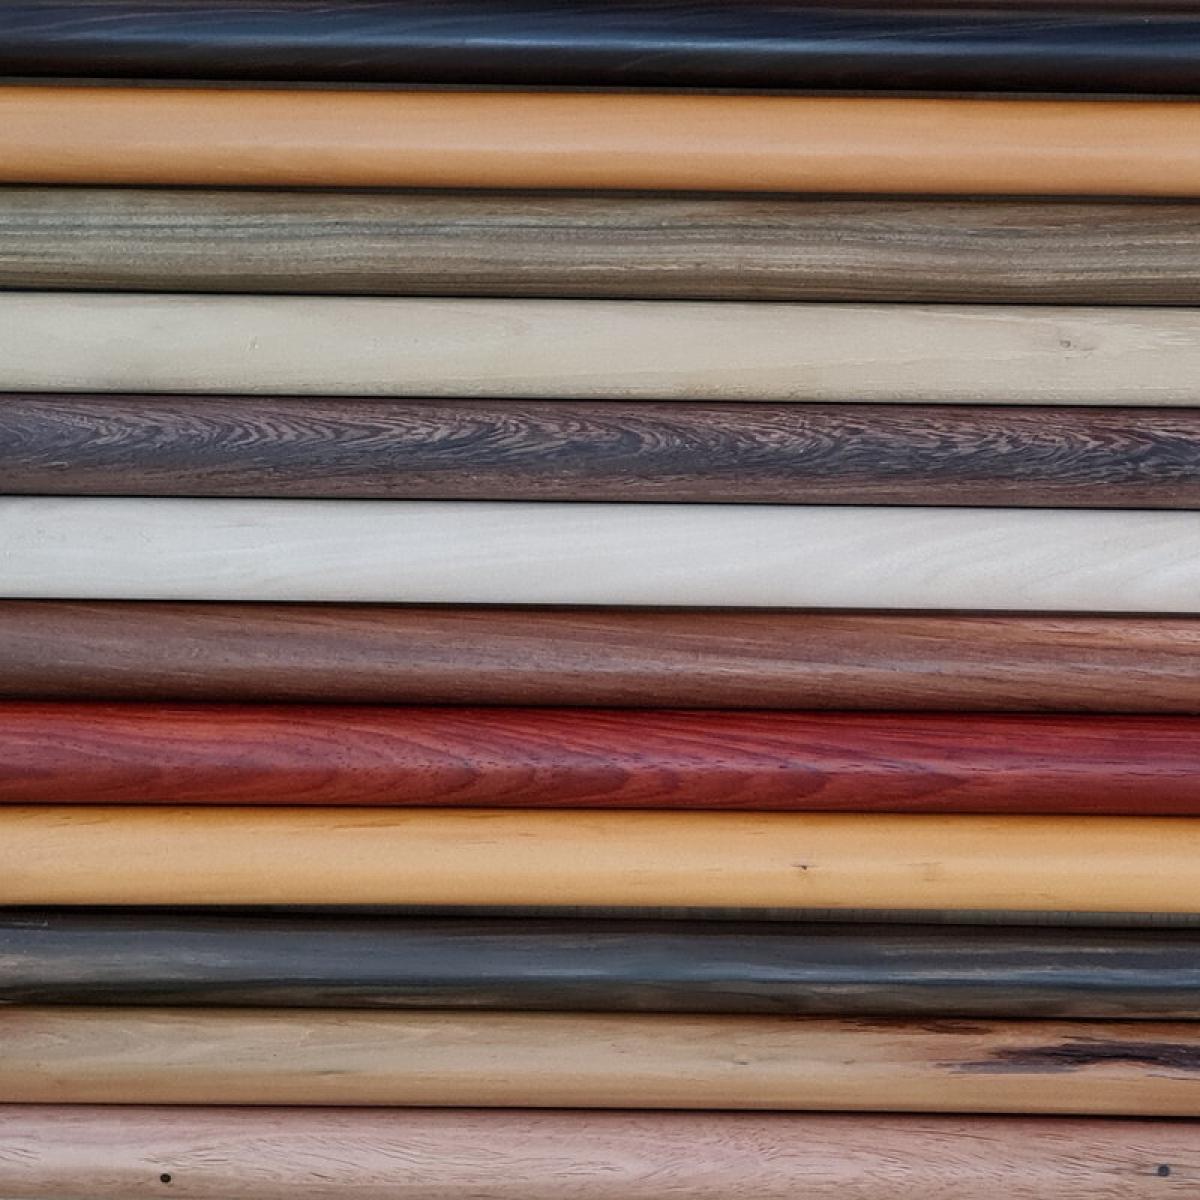 Außergewöhnlicher Ebenholz-Bokken mit Drachenschnitzerei♥ wunderschönes Geschenk✓ 100% Handarbeit✓ Aikido, Iaido, WingTsun, Kendo, Jodo➽nur bei uns im www.bokken-welt.de erhältlich